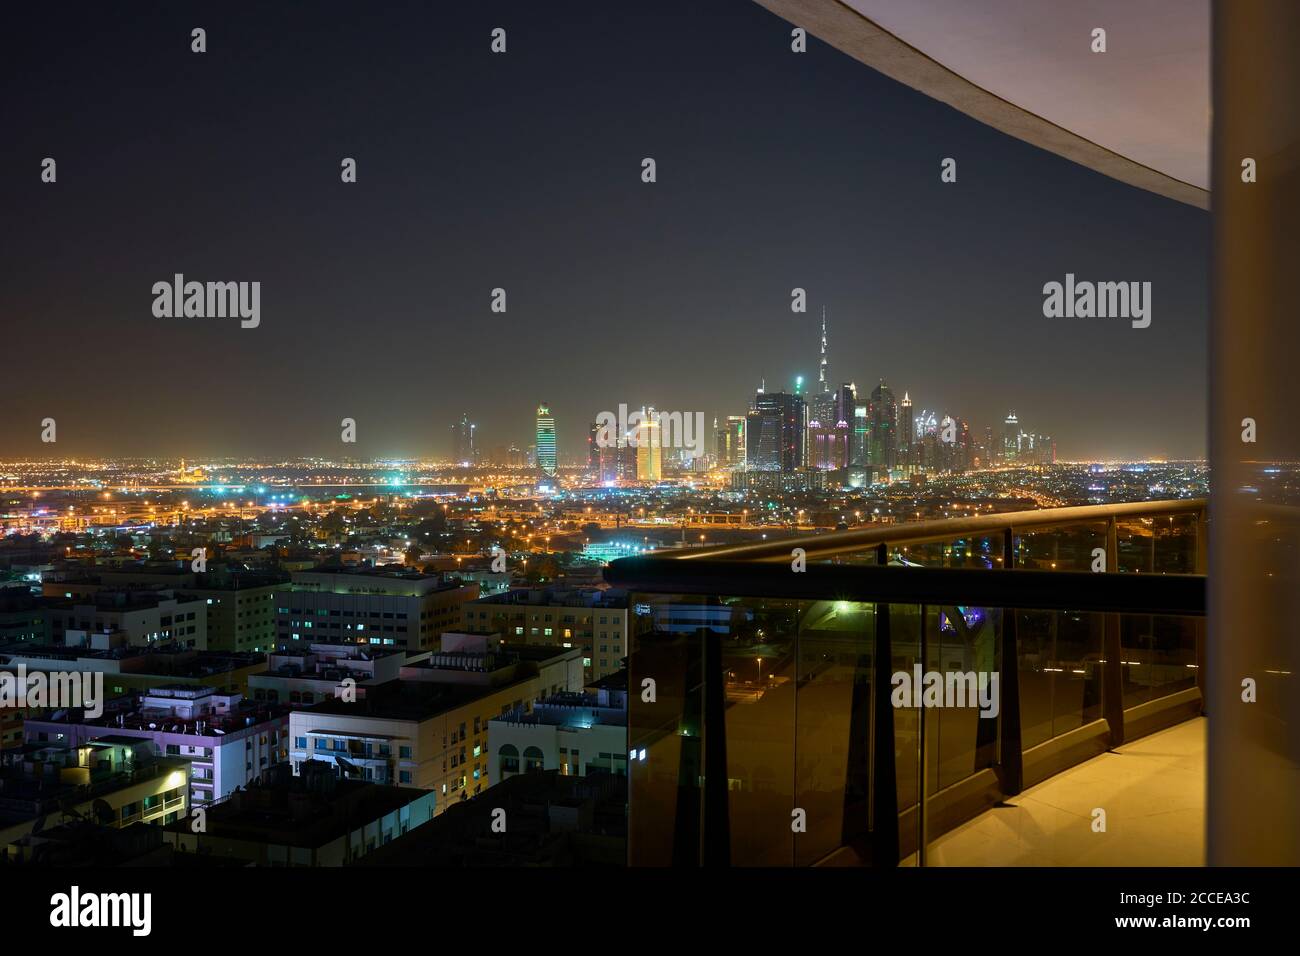 United Arab Emirates, UAE, Africa, Dubai, Downtown, CBD, Middle East, Illuminated Cityscape at night, Stock Photo